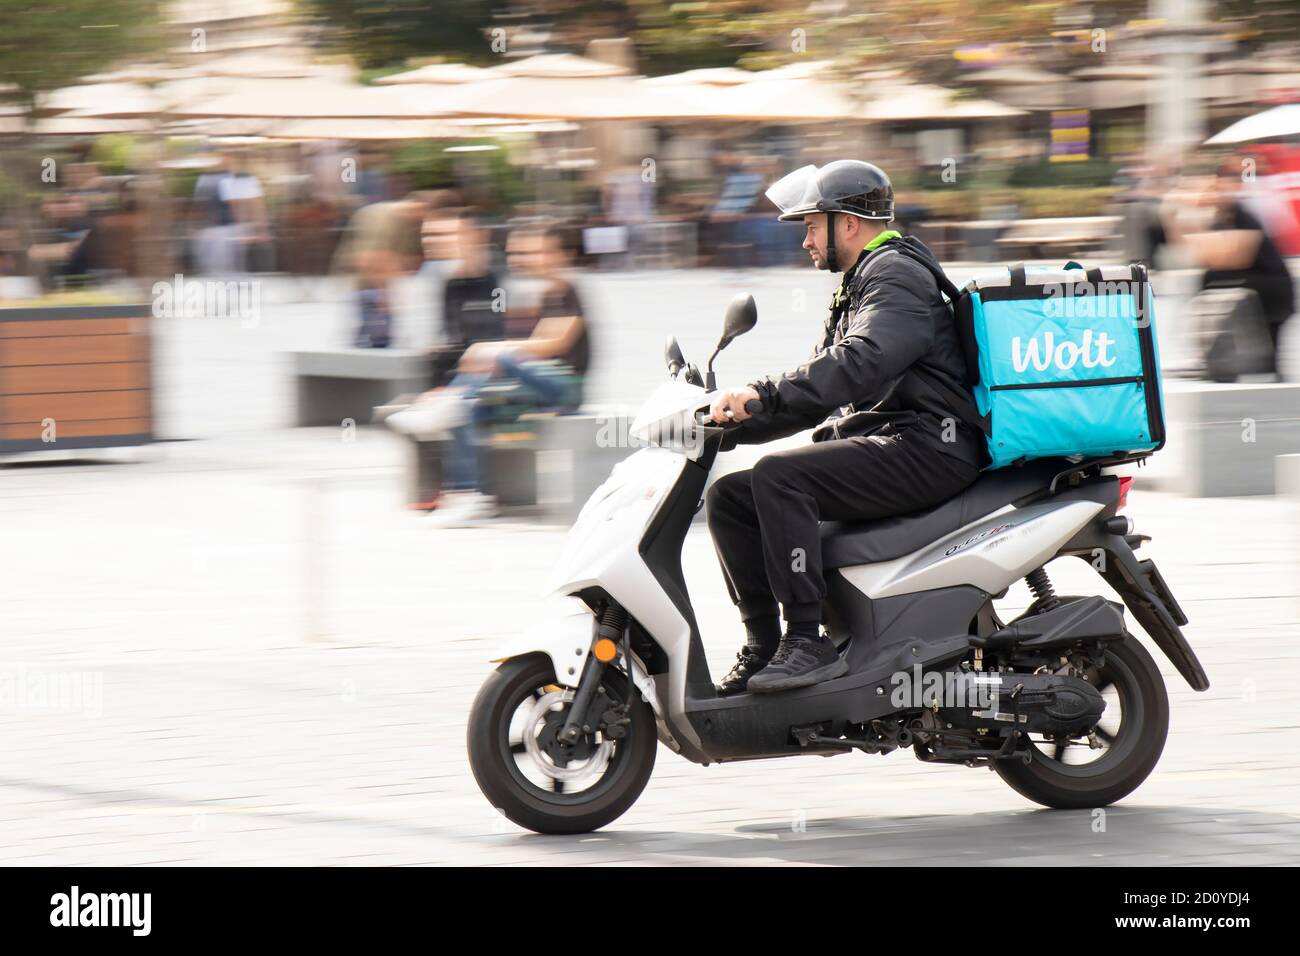 Belgrado, Serbia - 02 ottobre 2020: Corriere che lavora per il servizio di consegna di cibo della città di Wolt che guida una moto scooter in strada della città Foto Stock